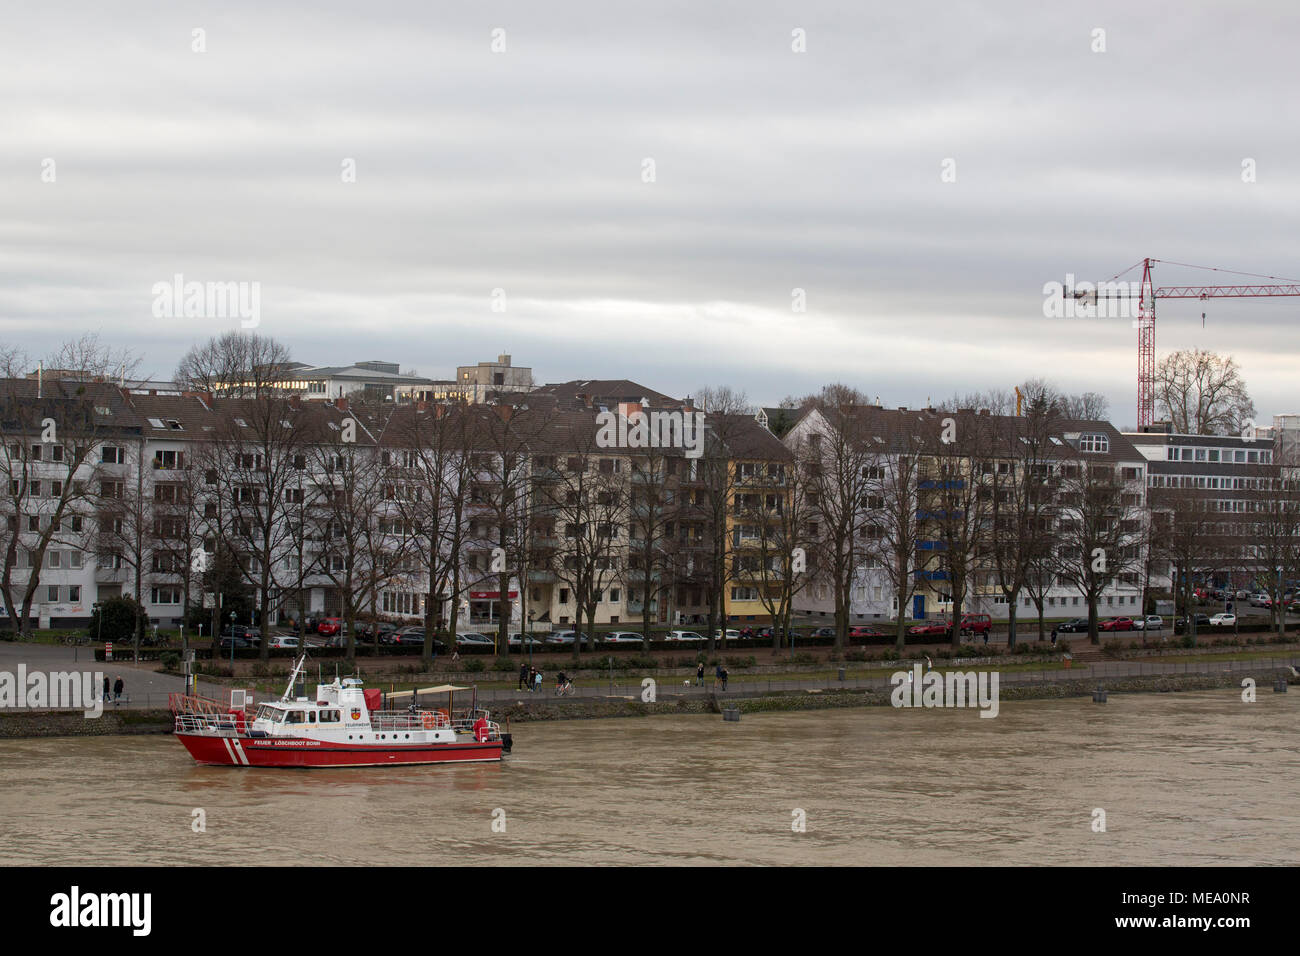 La ville de Bonn sur la banque du fleuve Rhin Nord Westphalie, Allemagne, Rhyne Banque D'Images